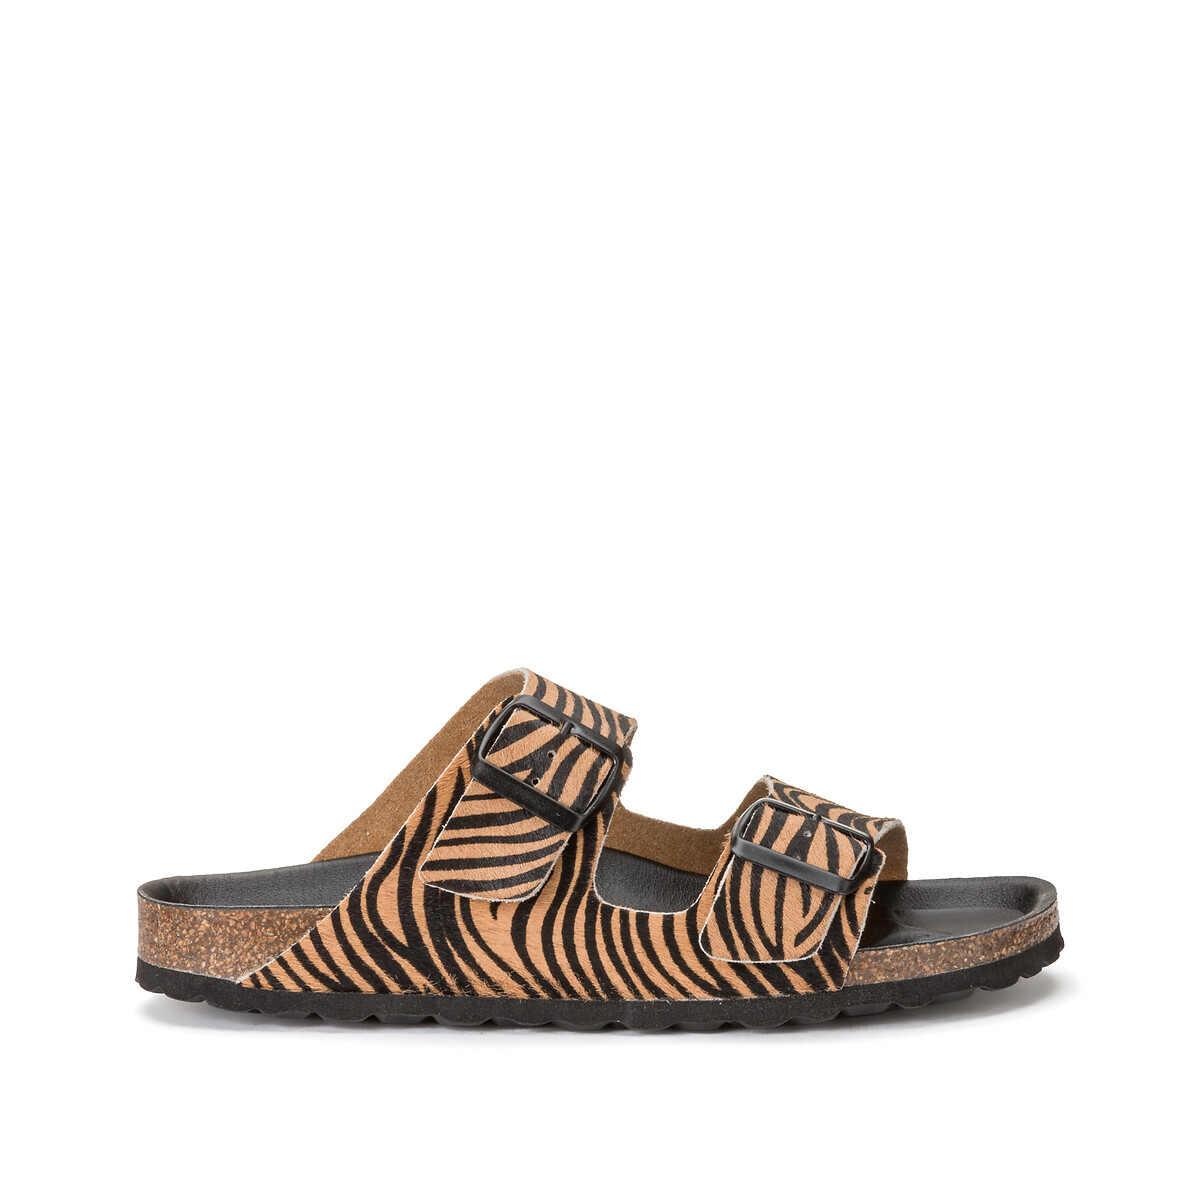 Туфли Кожаные без задника для широкой стопы с принтом зебра размер 38-45 44 каштановый